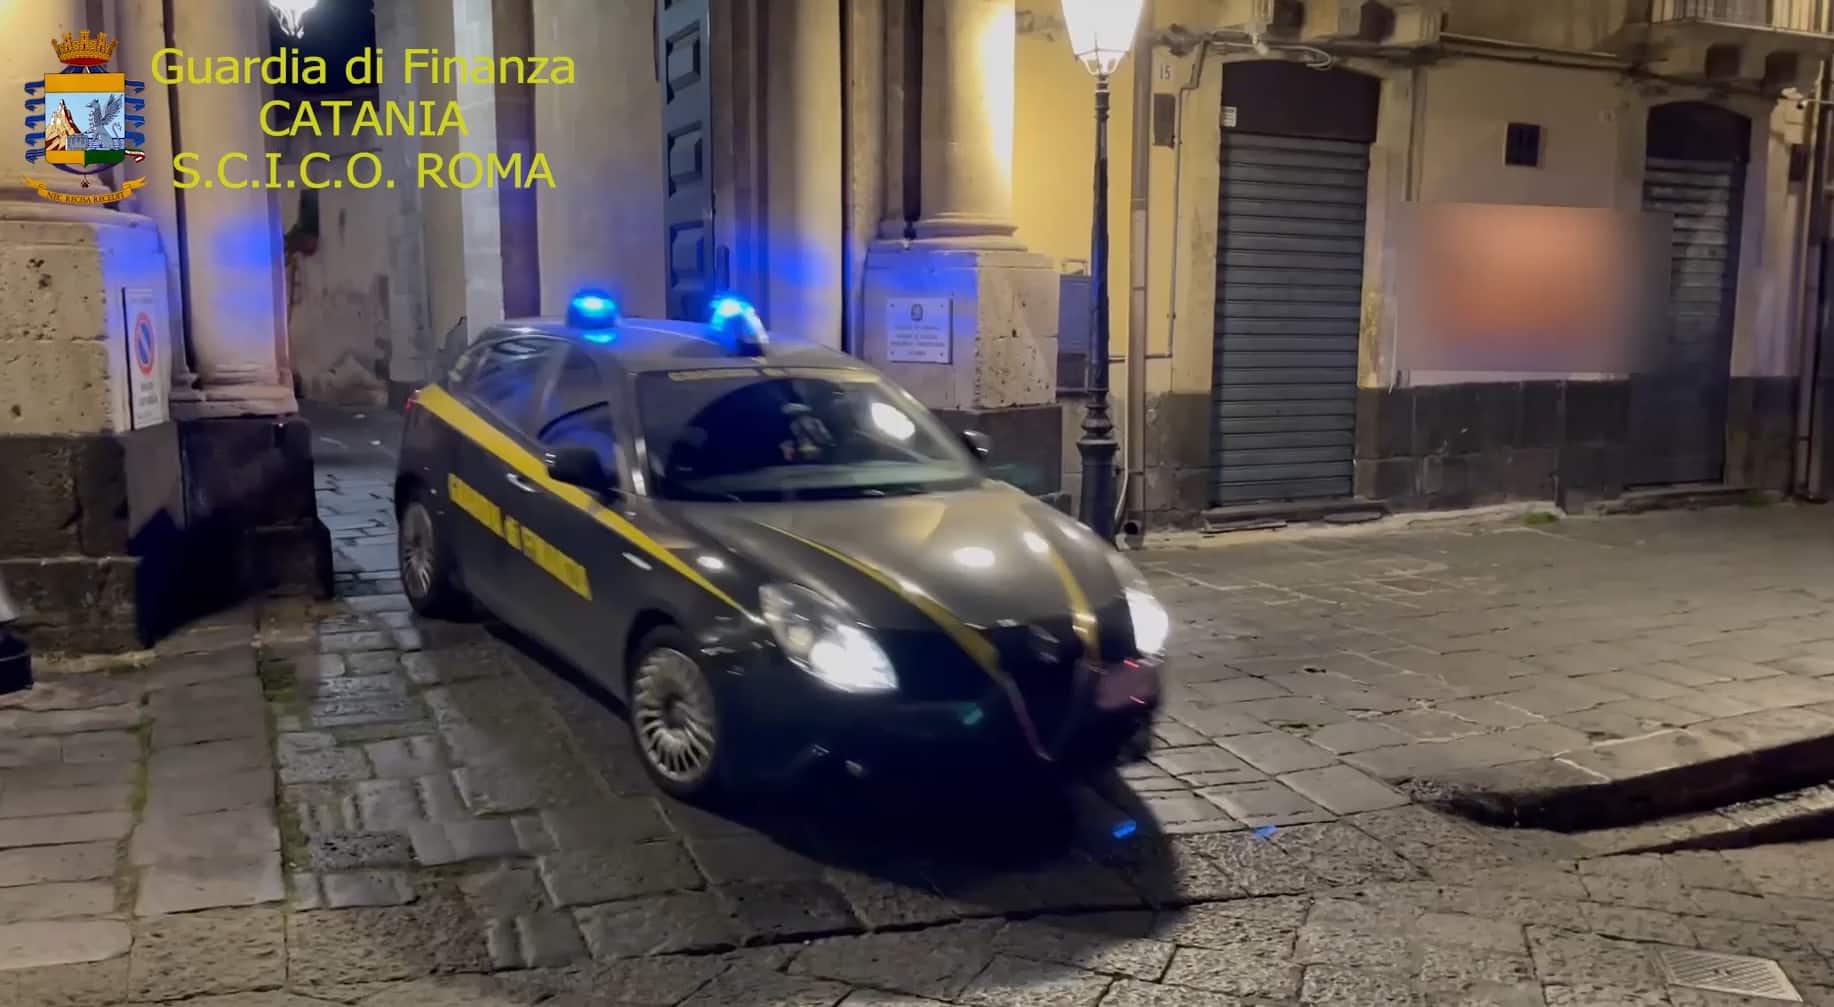 Catania, maxi operazione della Guardia di Finanza: smantellato traffico di droga, 13 arresti – VIDEO